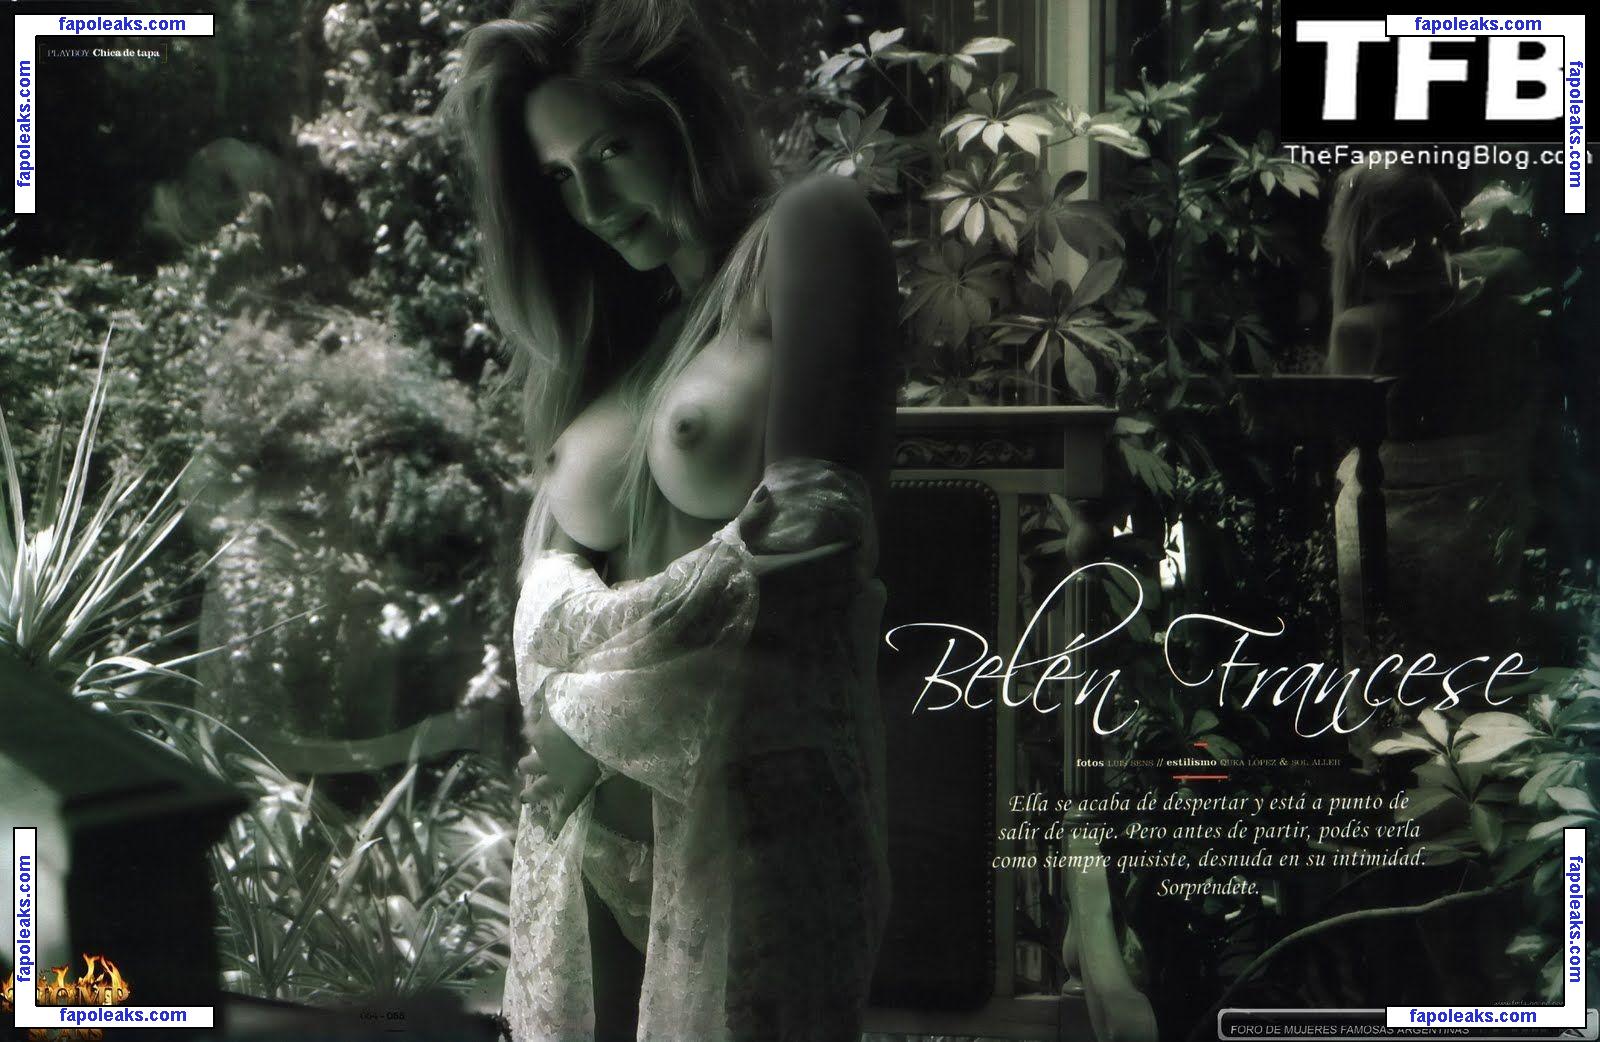 Belen Francese / belufrancese nude photo #0042 from OnlyFans